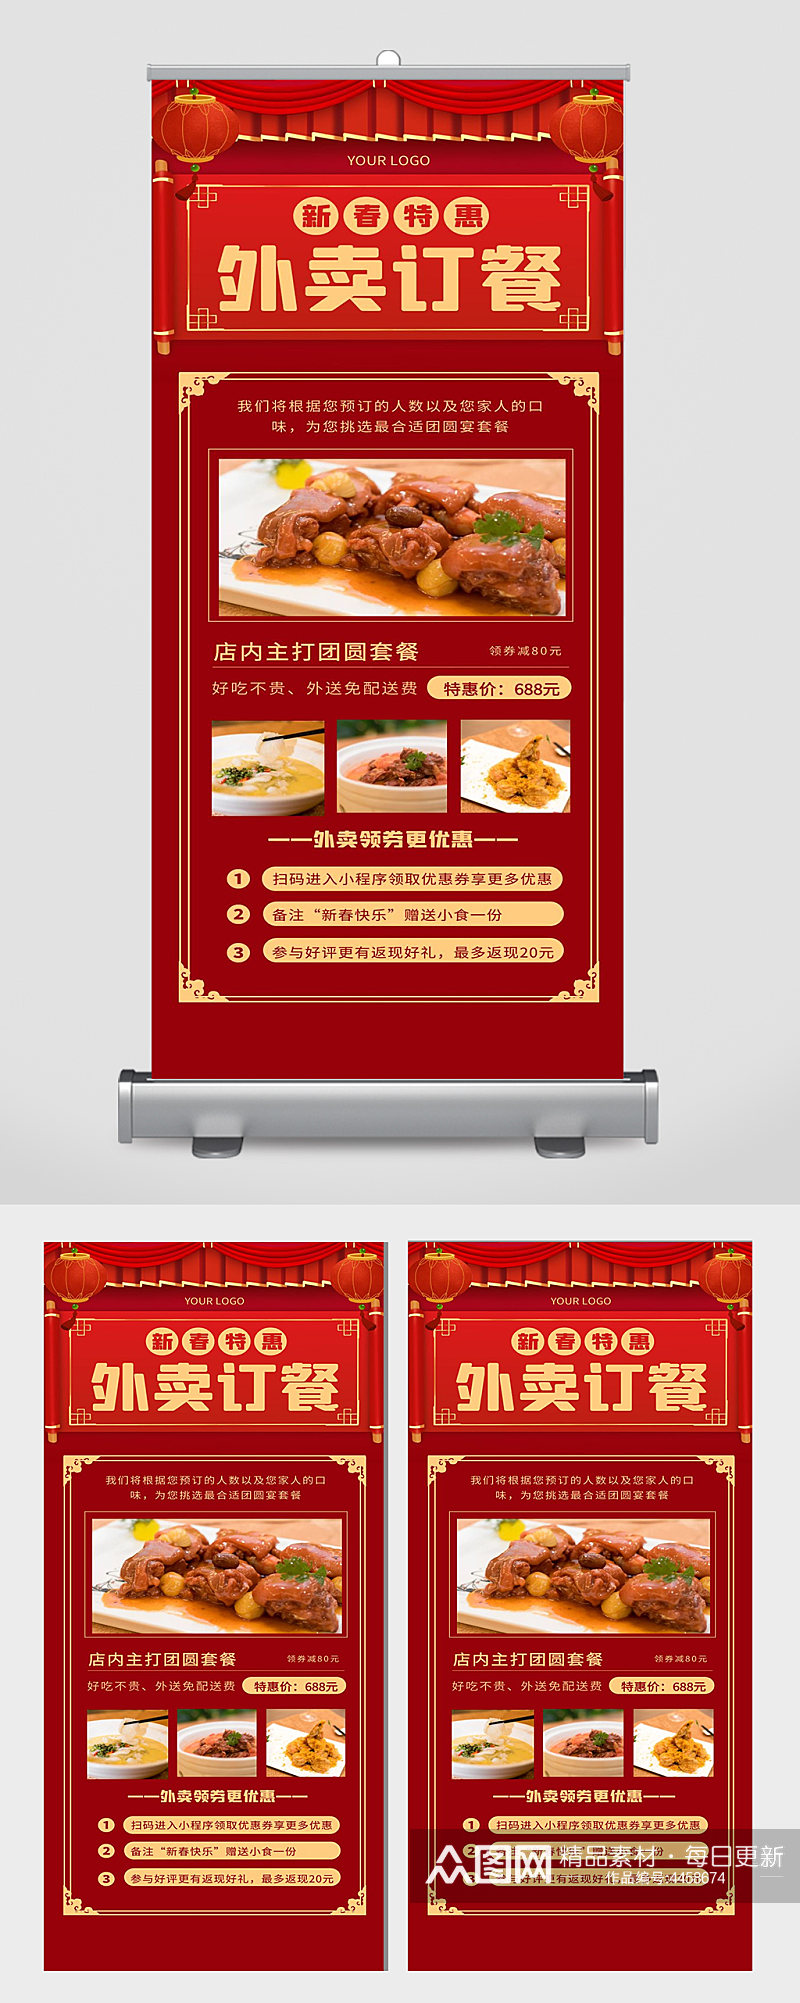 新春特惠外卖订餐美食宣传海报设计素材